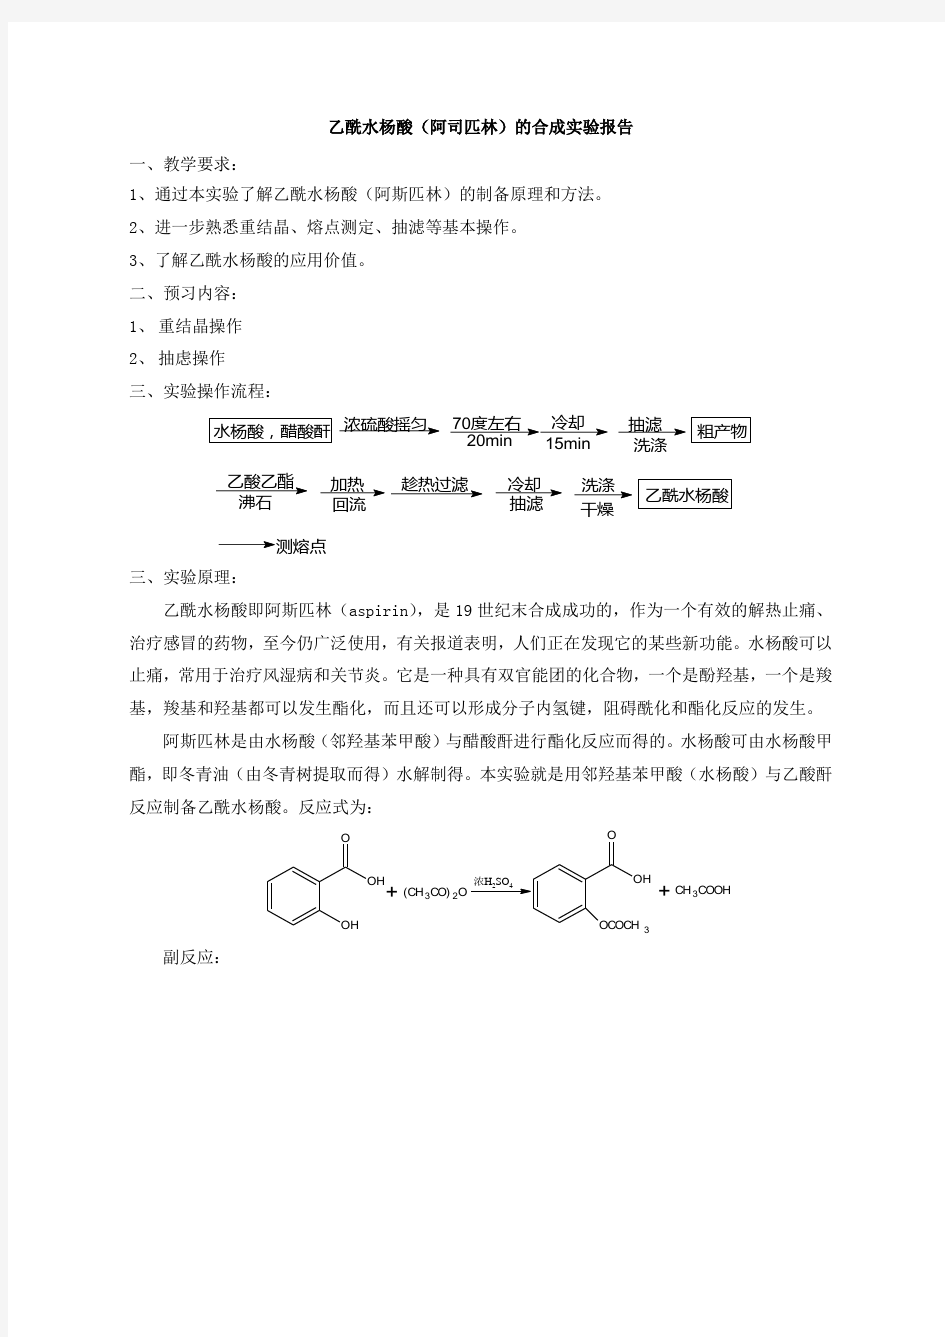 乙酰水杨酸(阿司匹林)的合成实验报告